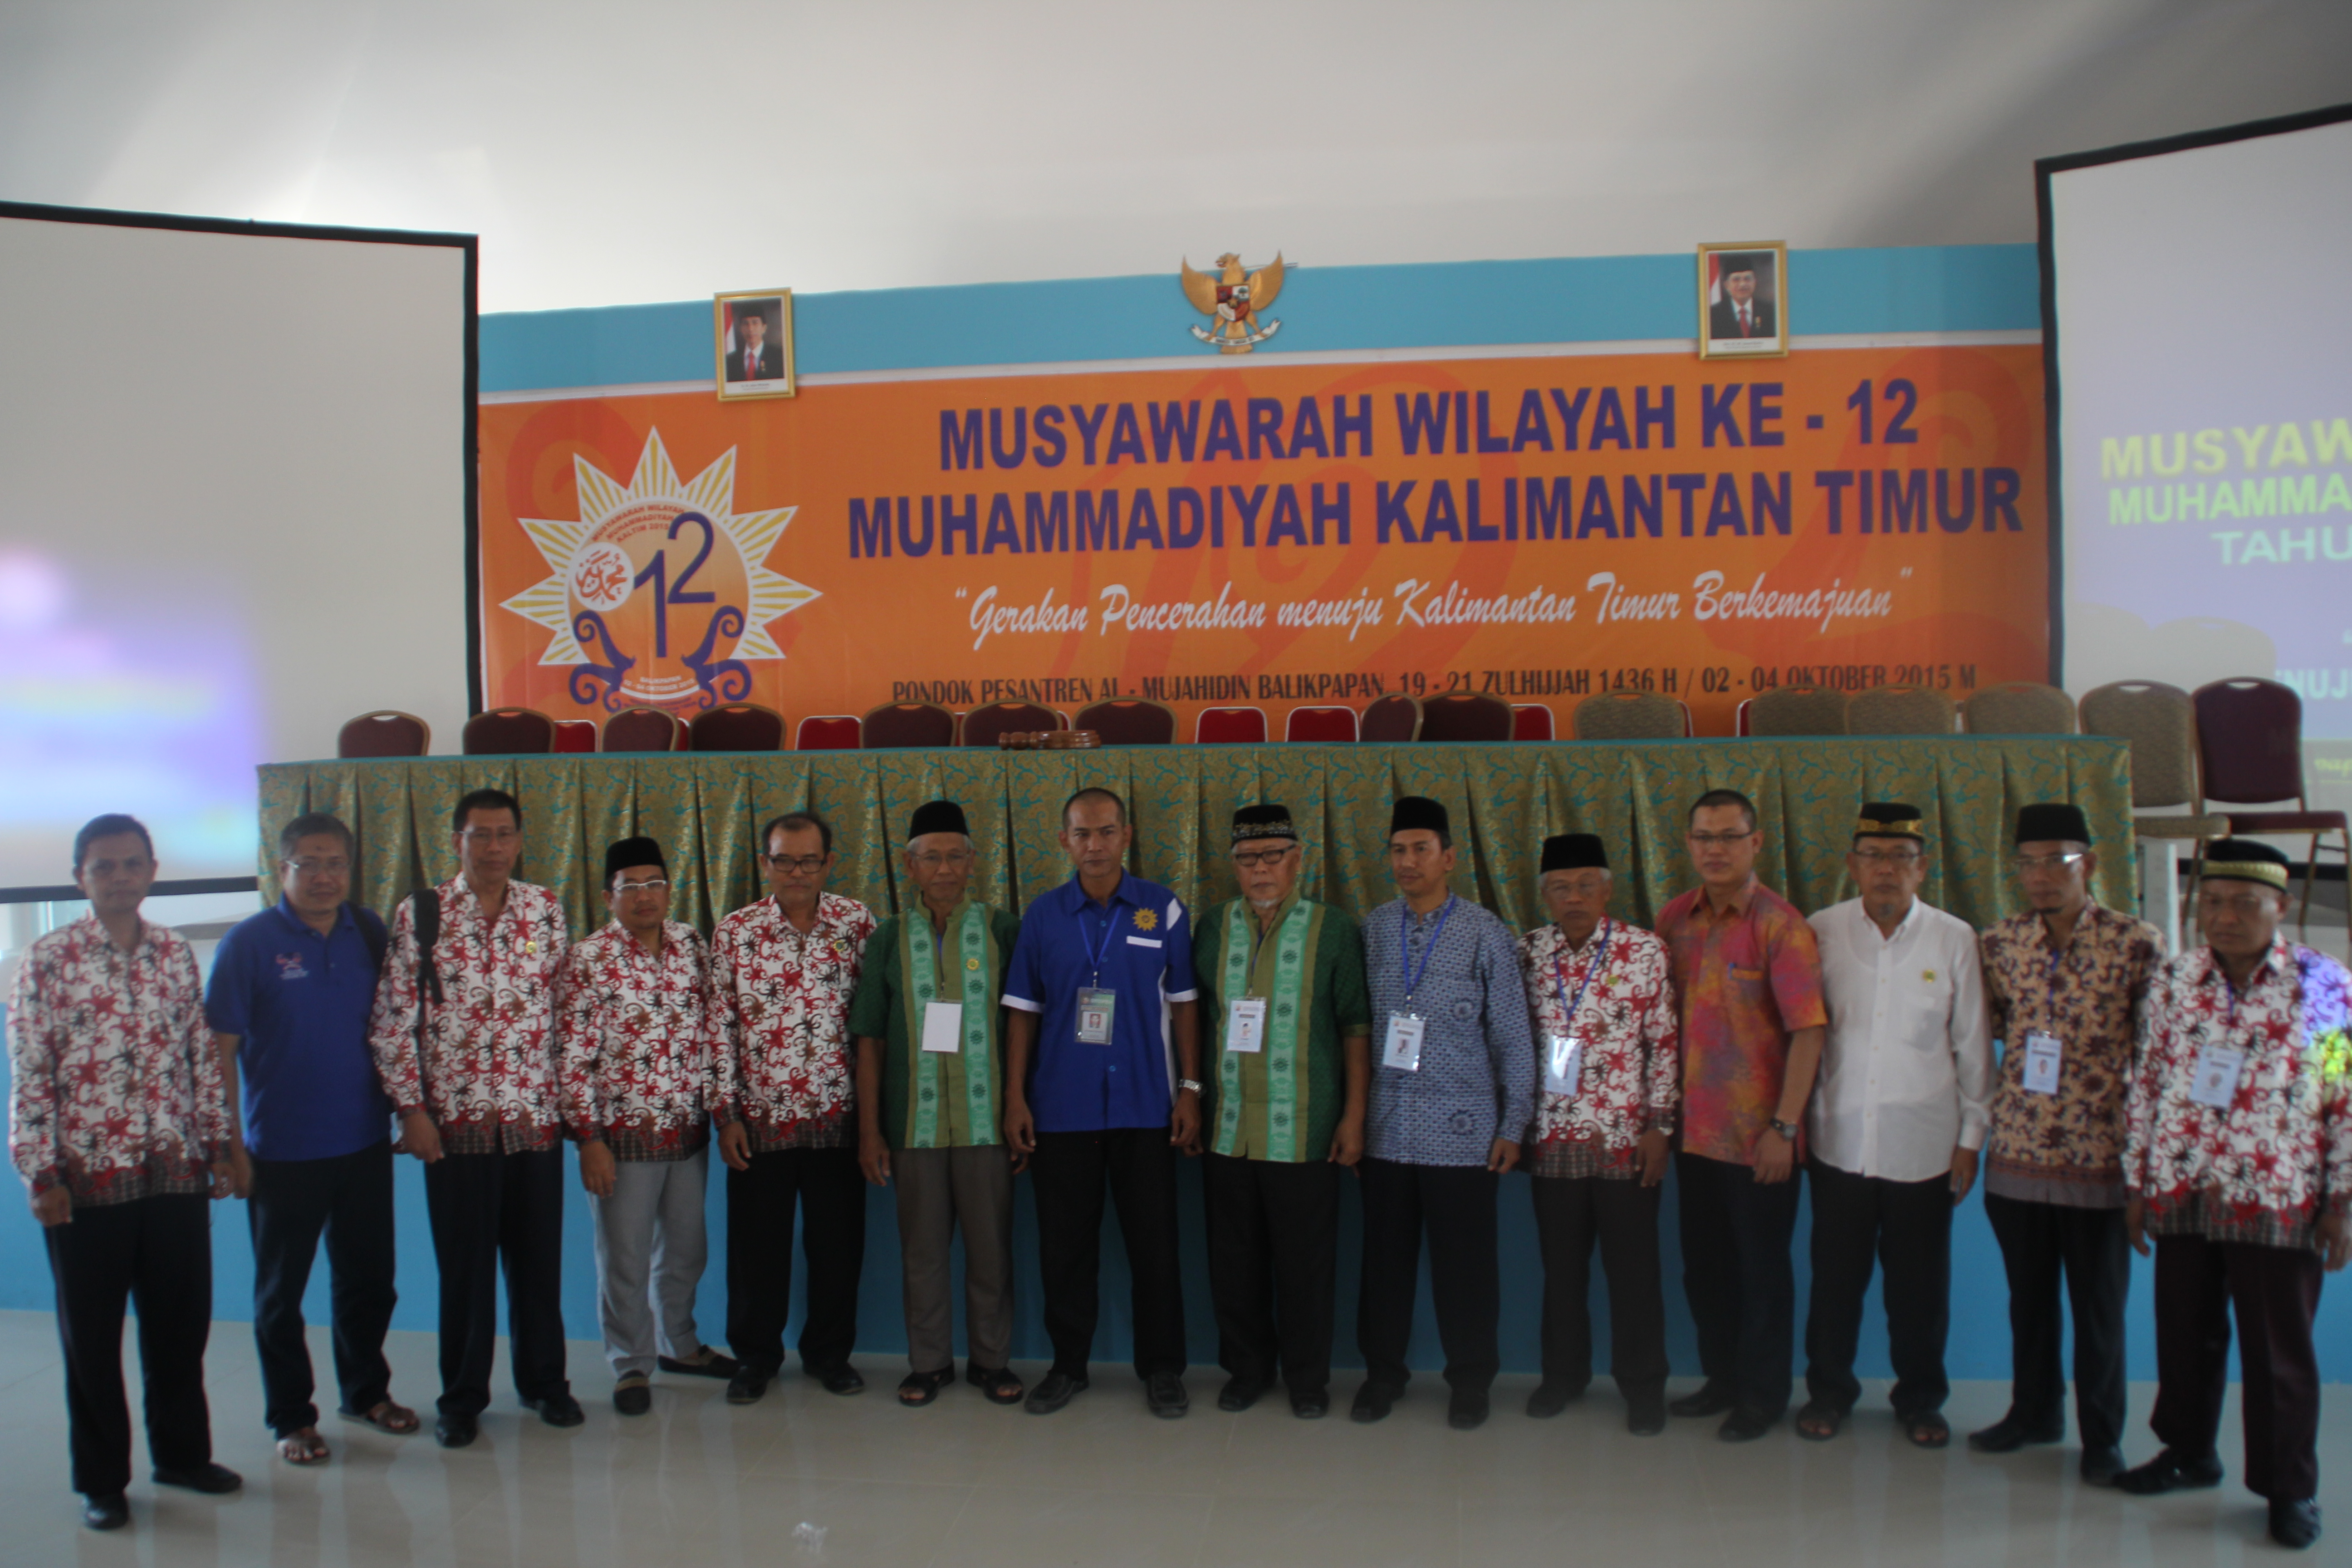 Lembaga Pengembangan Pondok Pesantren Muhammadiyah PW Muhammadiyah Kalimantan Timur